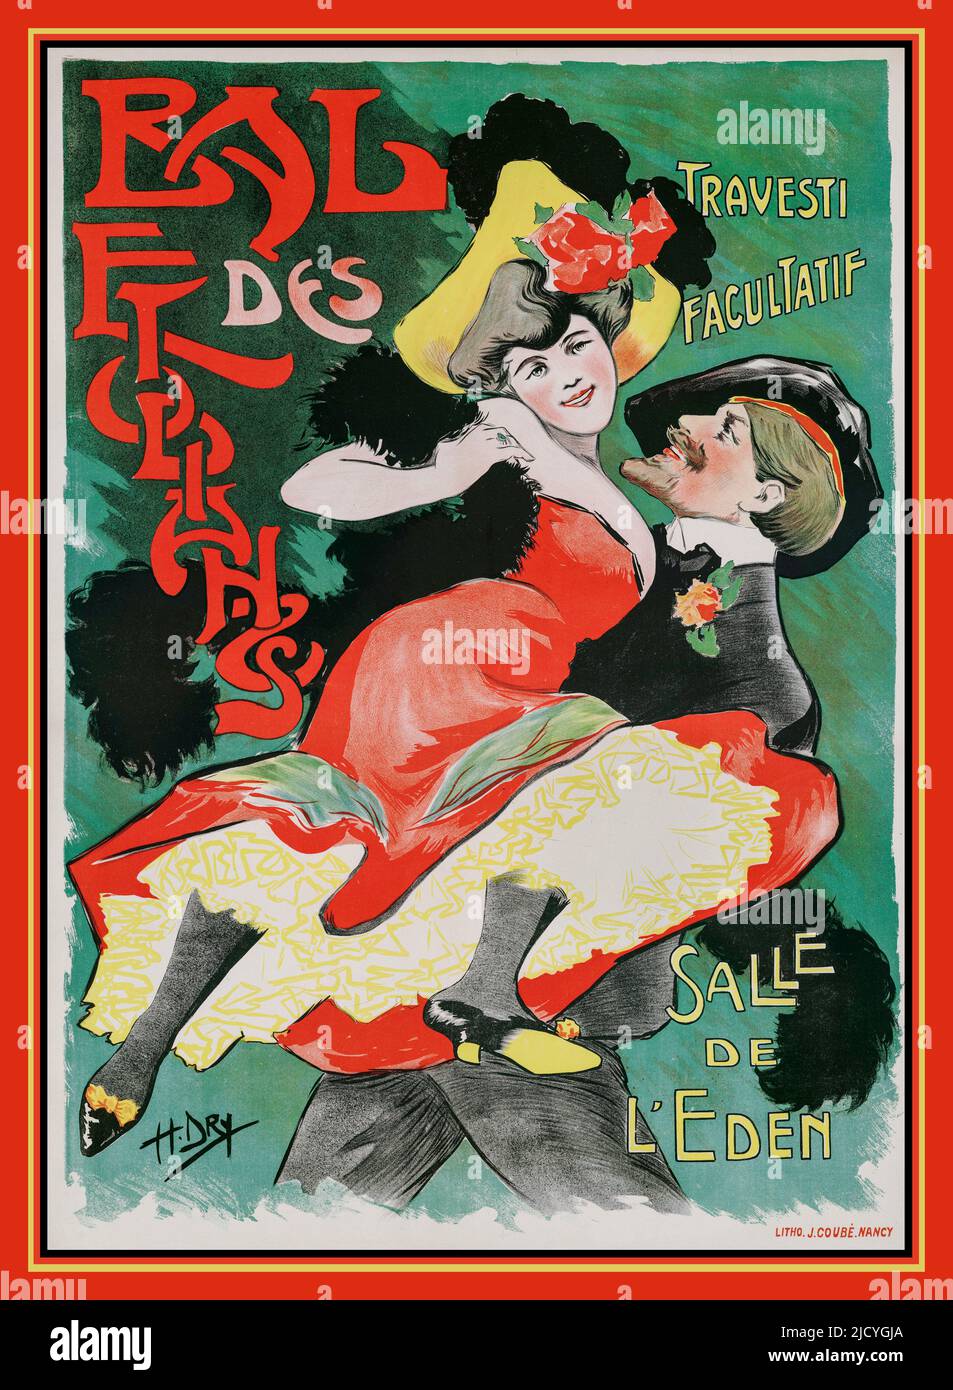 Vintage 1900s French entertainment Dance poster Student Ball travestite opzionale Eden Hall 'Bal des étudiants Travesti facultatif Salle de l'Eden' France Foto Stock